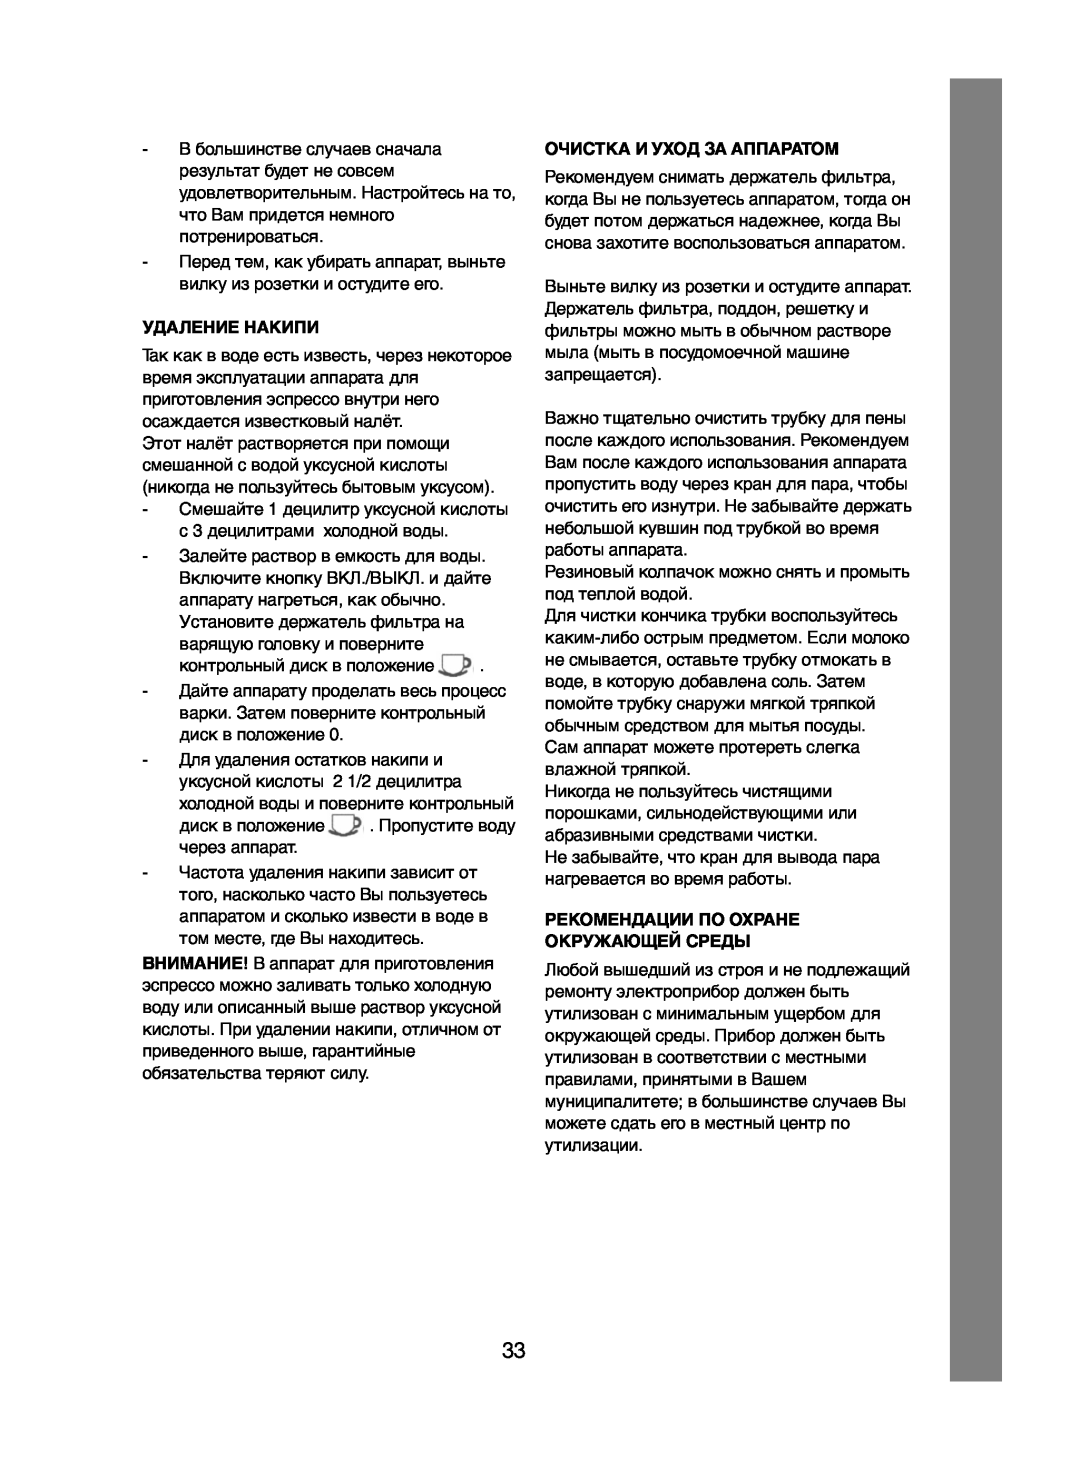 Melissa 245-032 manual Удаление Накипи, Очистка И Уход За Аппаратом, Рекомендации По Охране Окружающей Среды 